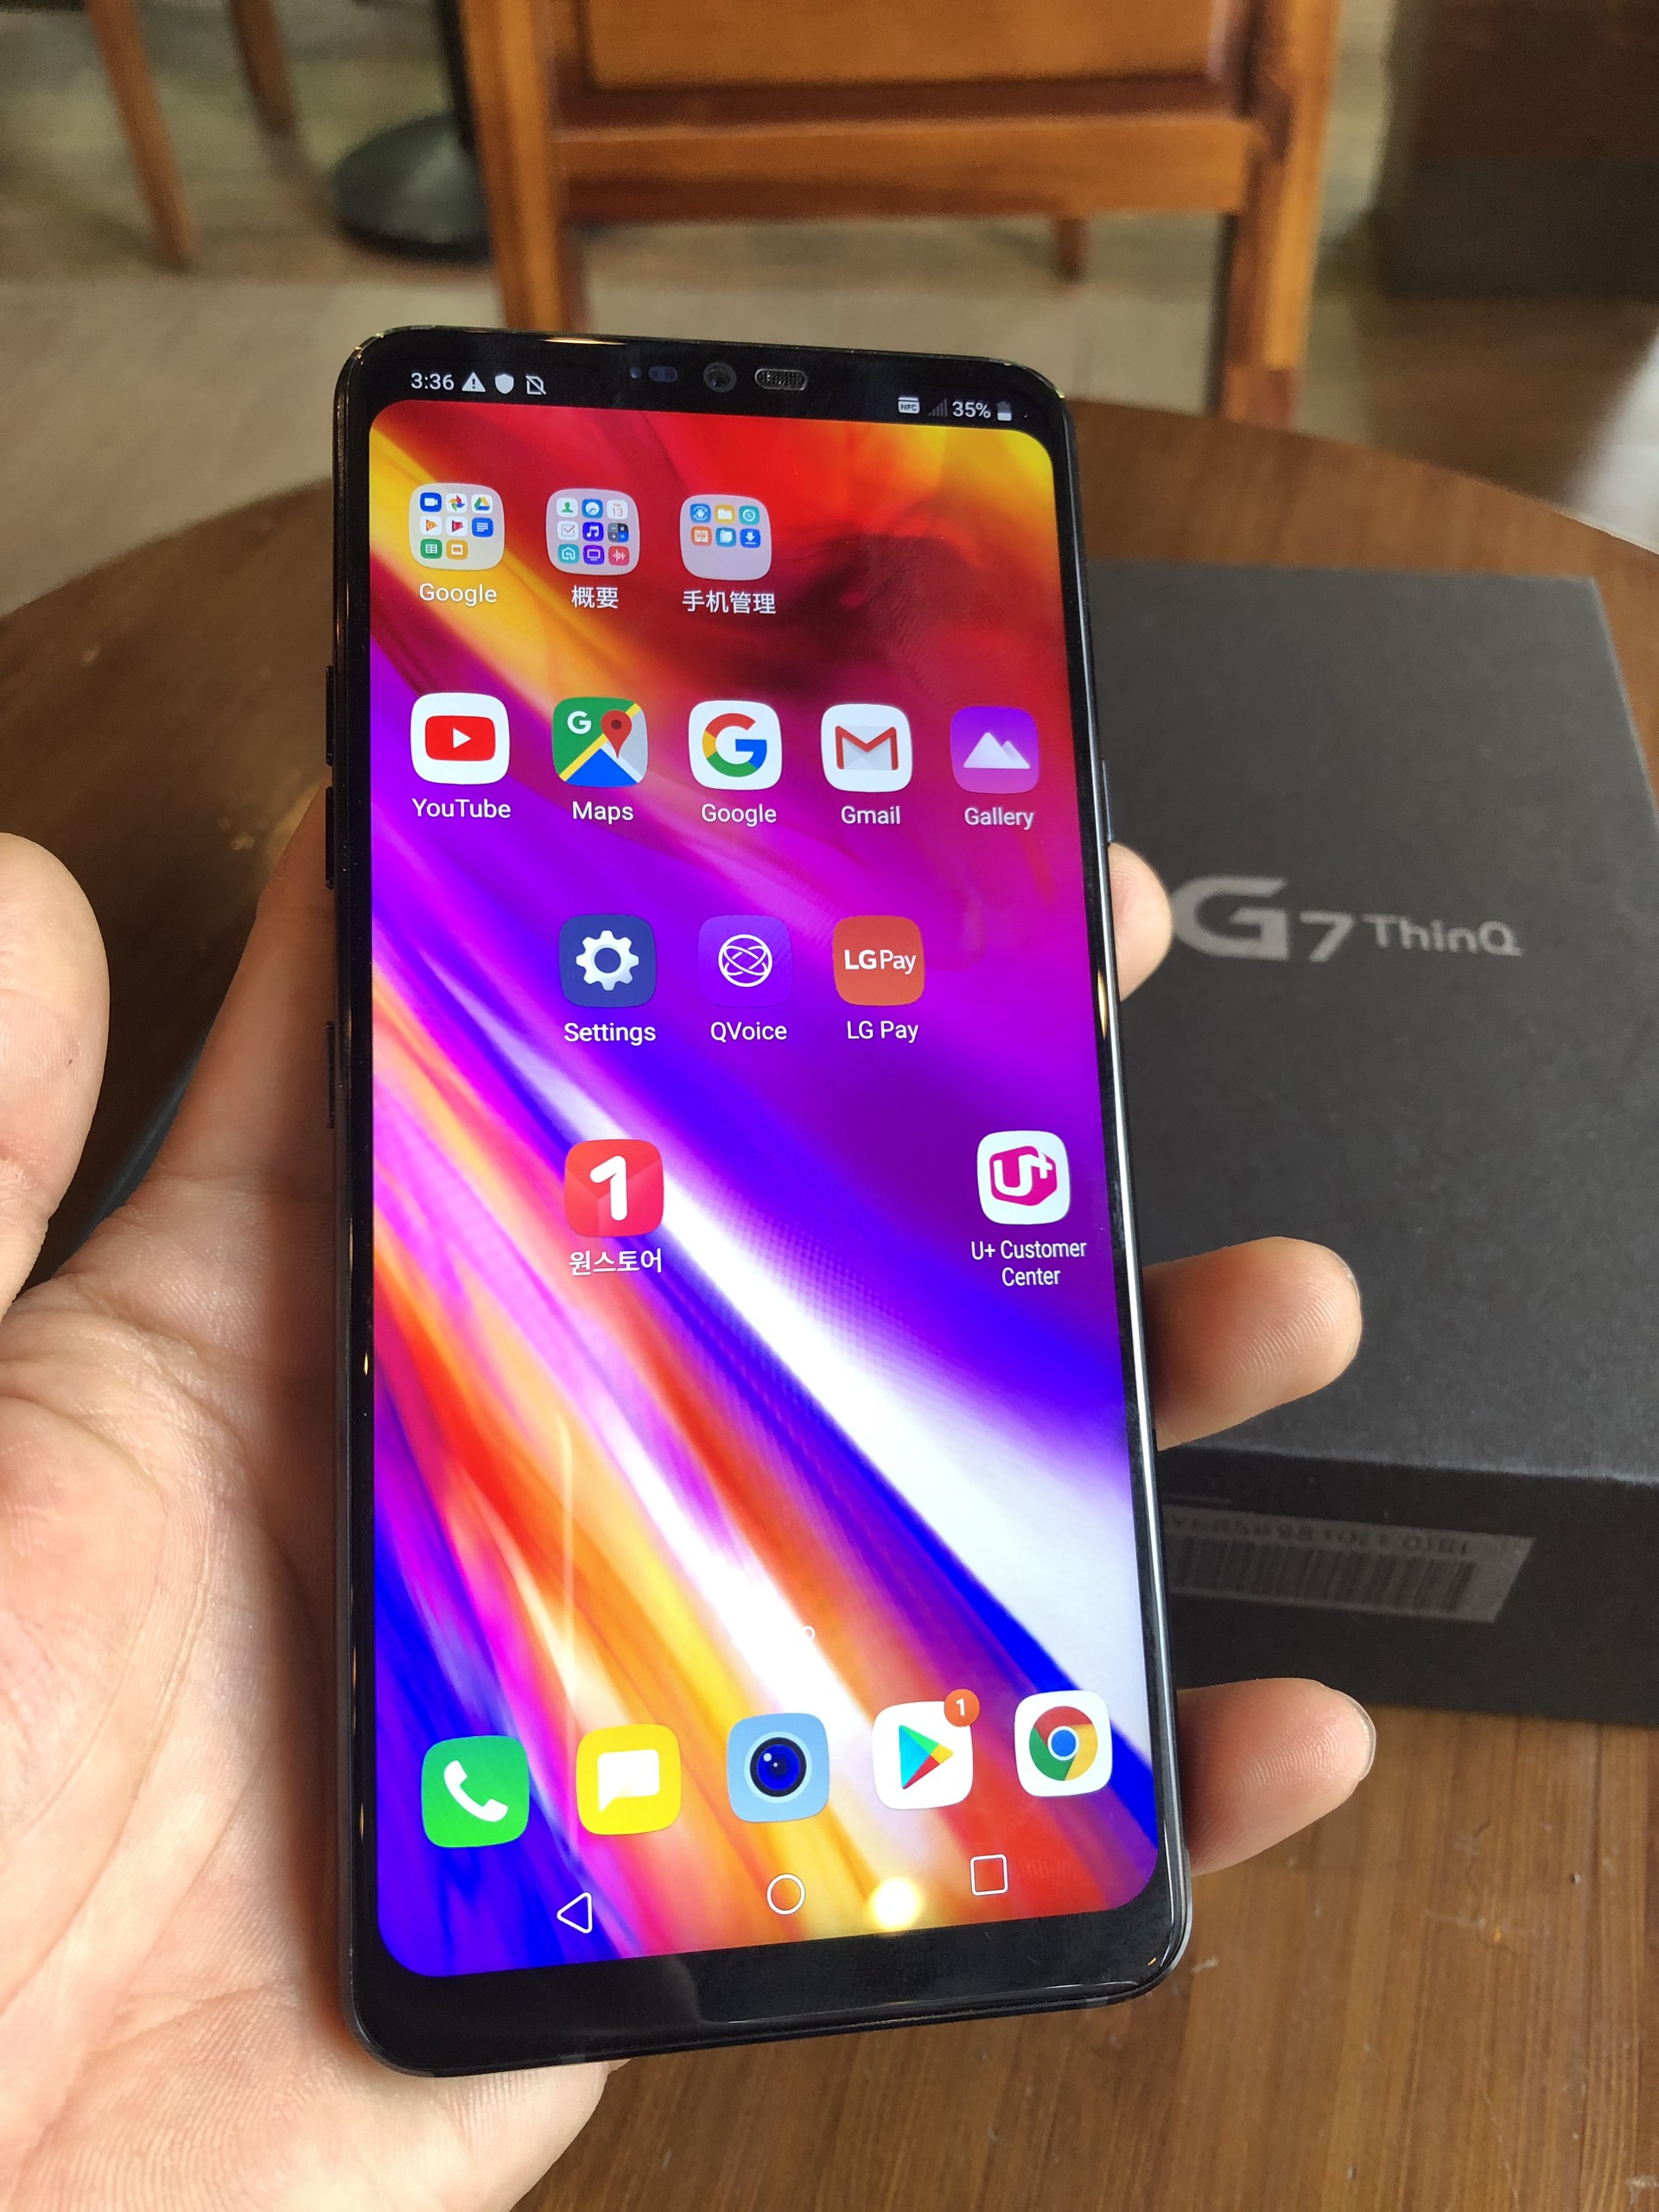 Điện thoại LG G7 thinq snap 845 ram 4gb bộ nhờ 64gb